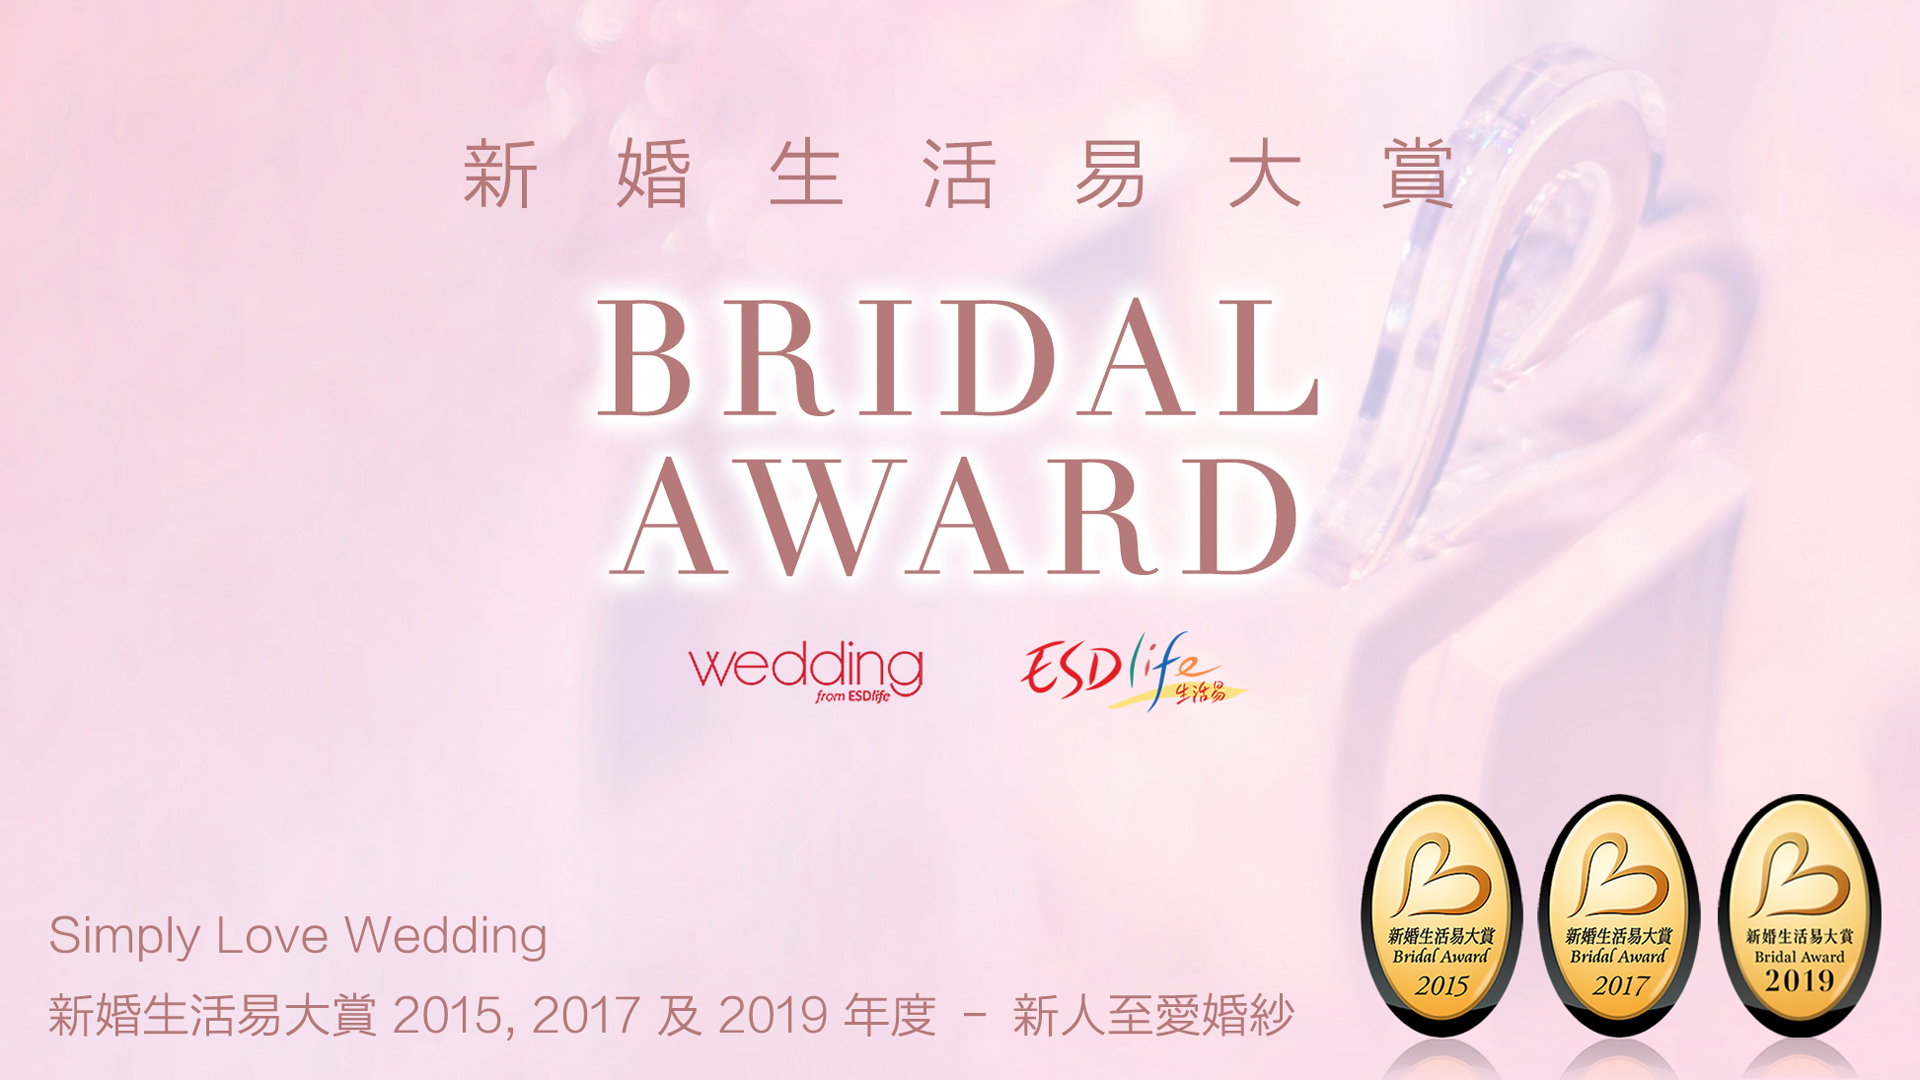 Best Wedding Gown @ ESDLife 2015 & 2017 Bridal Award